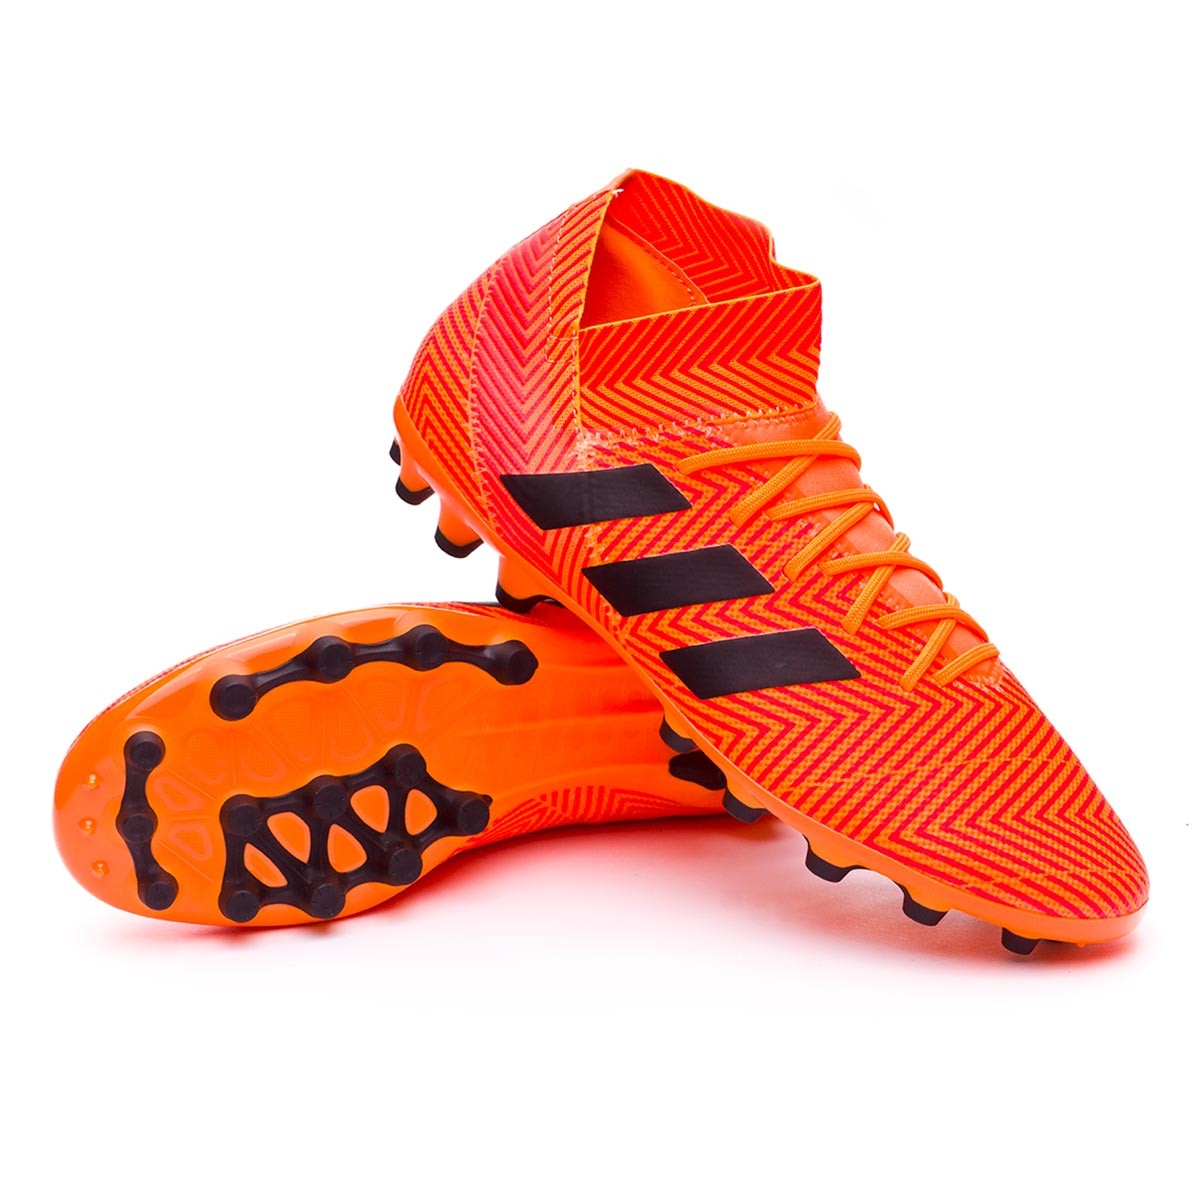 Football Boots adidas Nemeziz 18.3 AG 